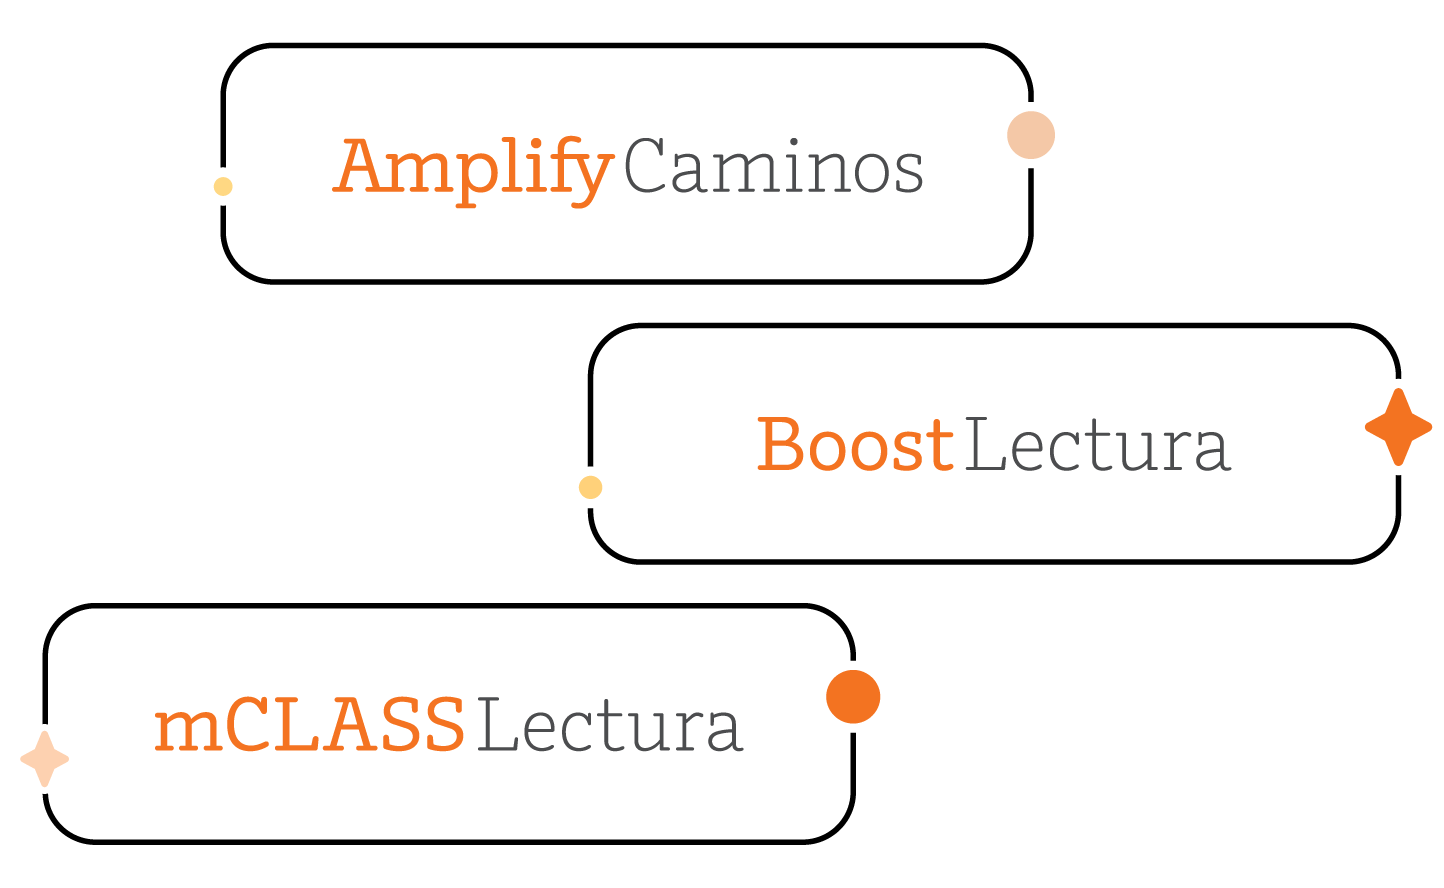 Tres bocadillos rectangulares de color naranja y blanco que contienen el texto “amplify caminos”, “boostlectura” y “mclass lectura”, cada uno con un pequeño gráfico de estrella naranja, representan español personalizado.